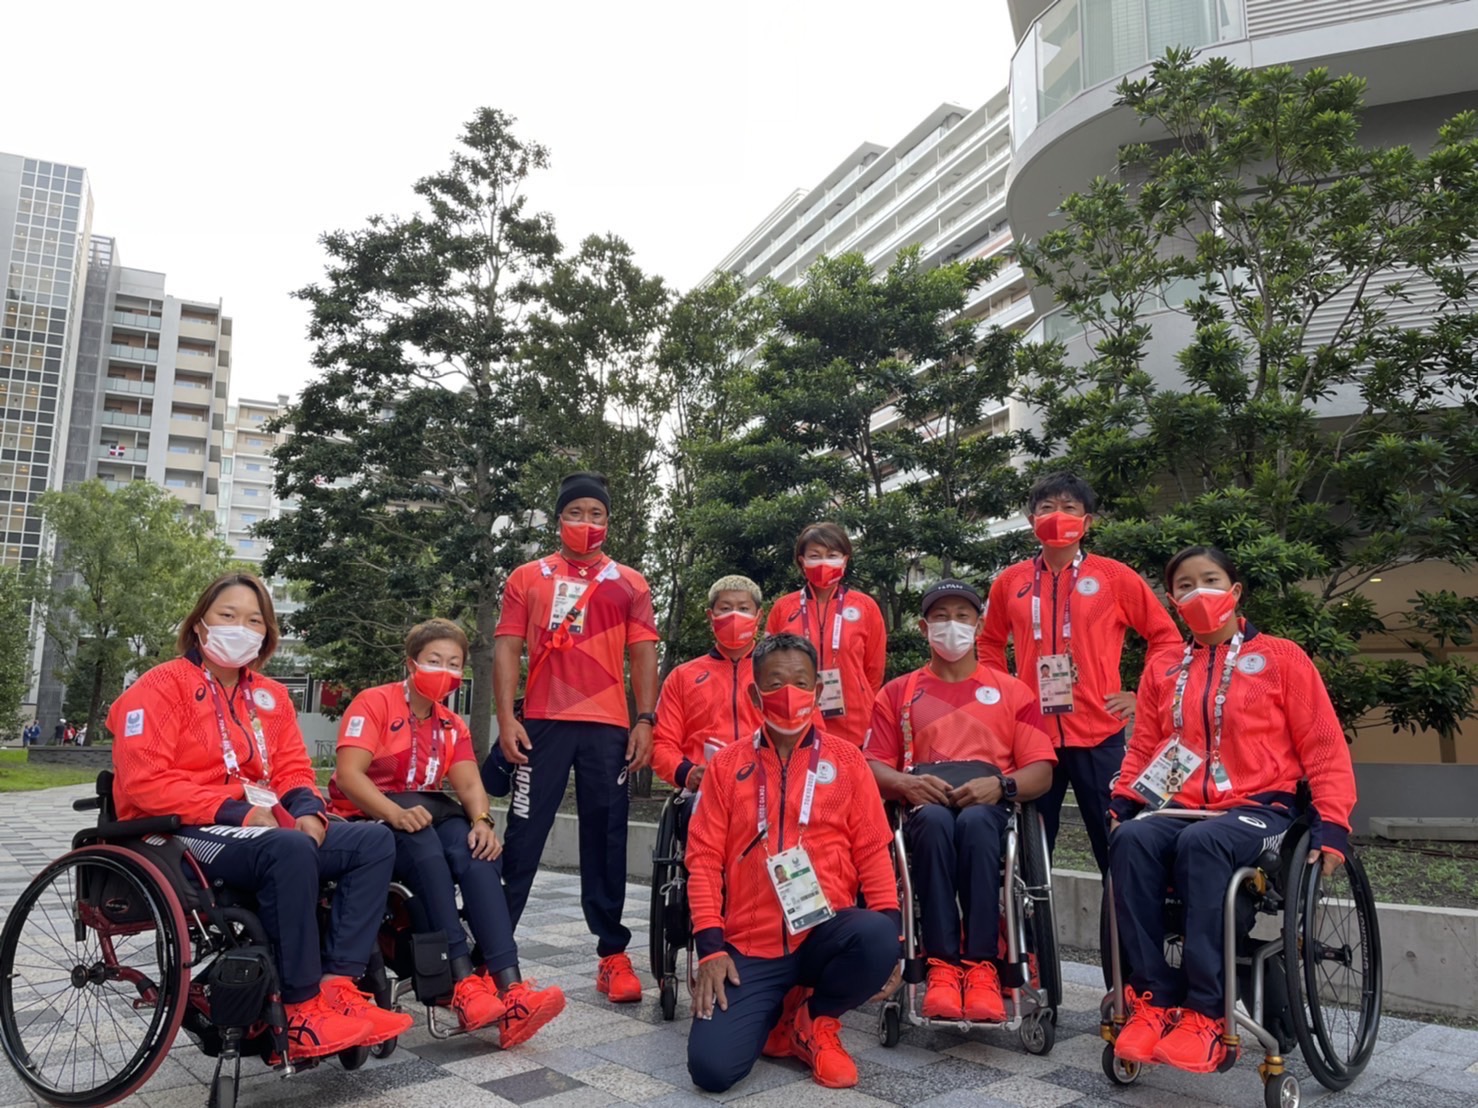 東京2020オリンピック・パラリンピック競技大会サポート